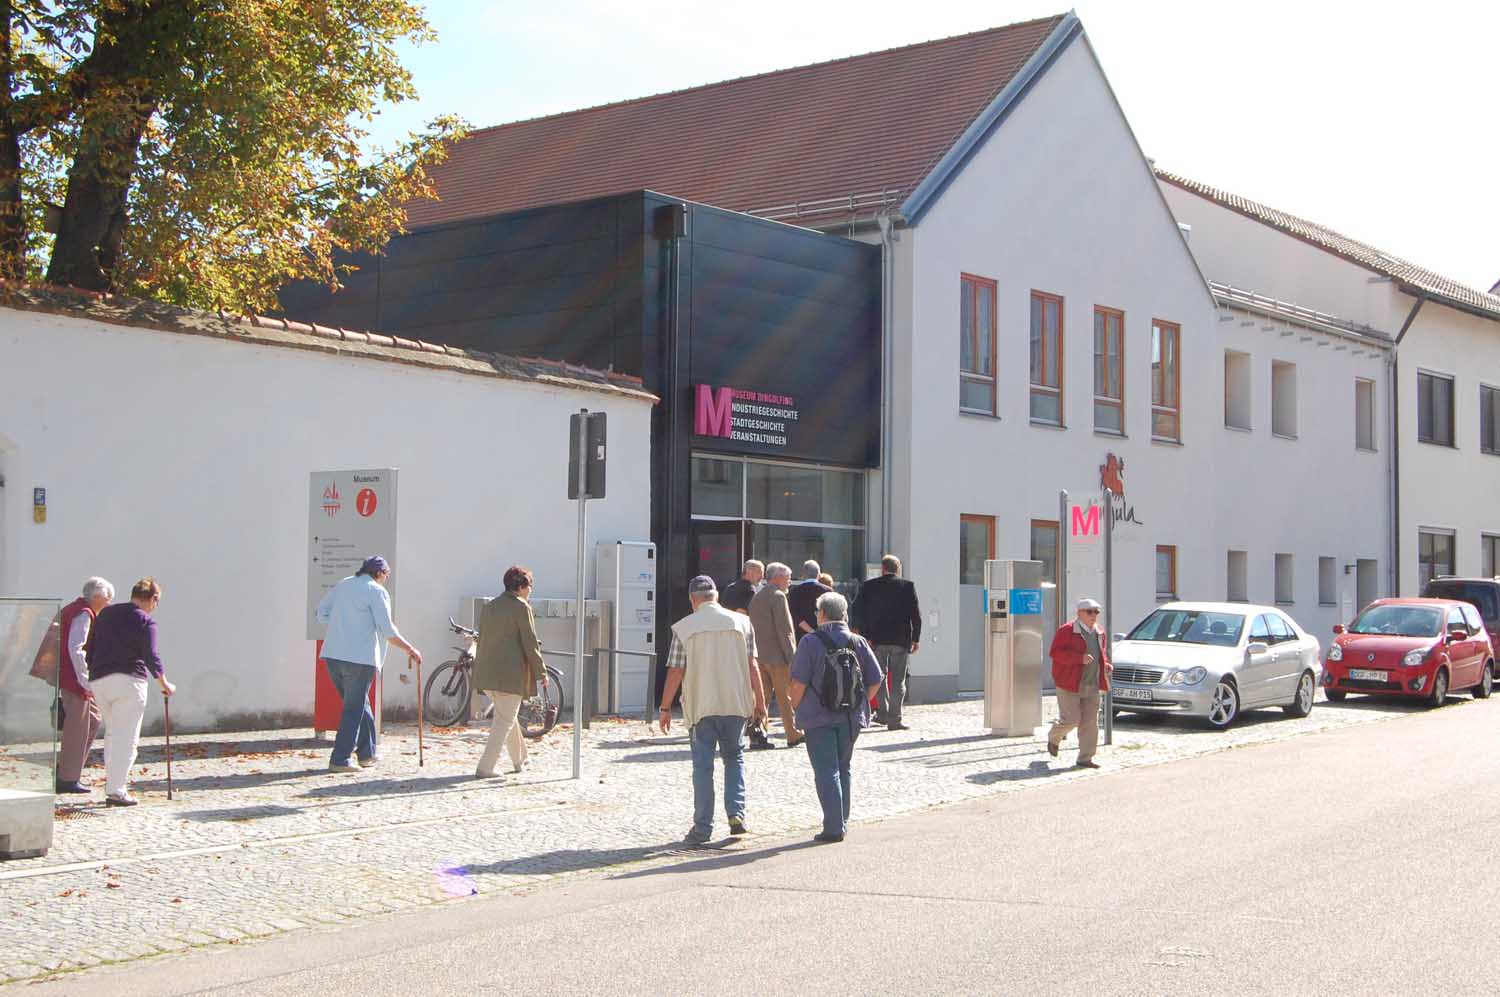 Industriemuseum Dingolfing
Direkt neben der historischen Herzogsburg hat die Stadt Dingolfing ein altes Gebäude zu einer modernen Sammlung ausgebaut.